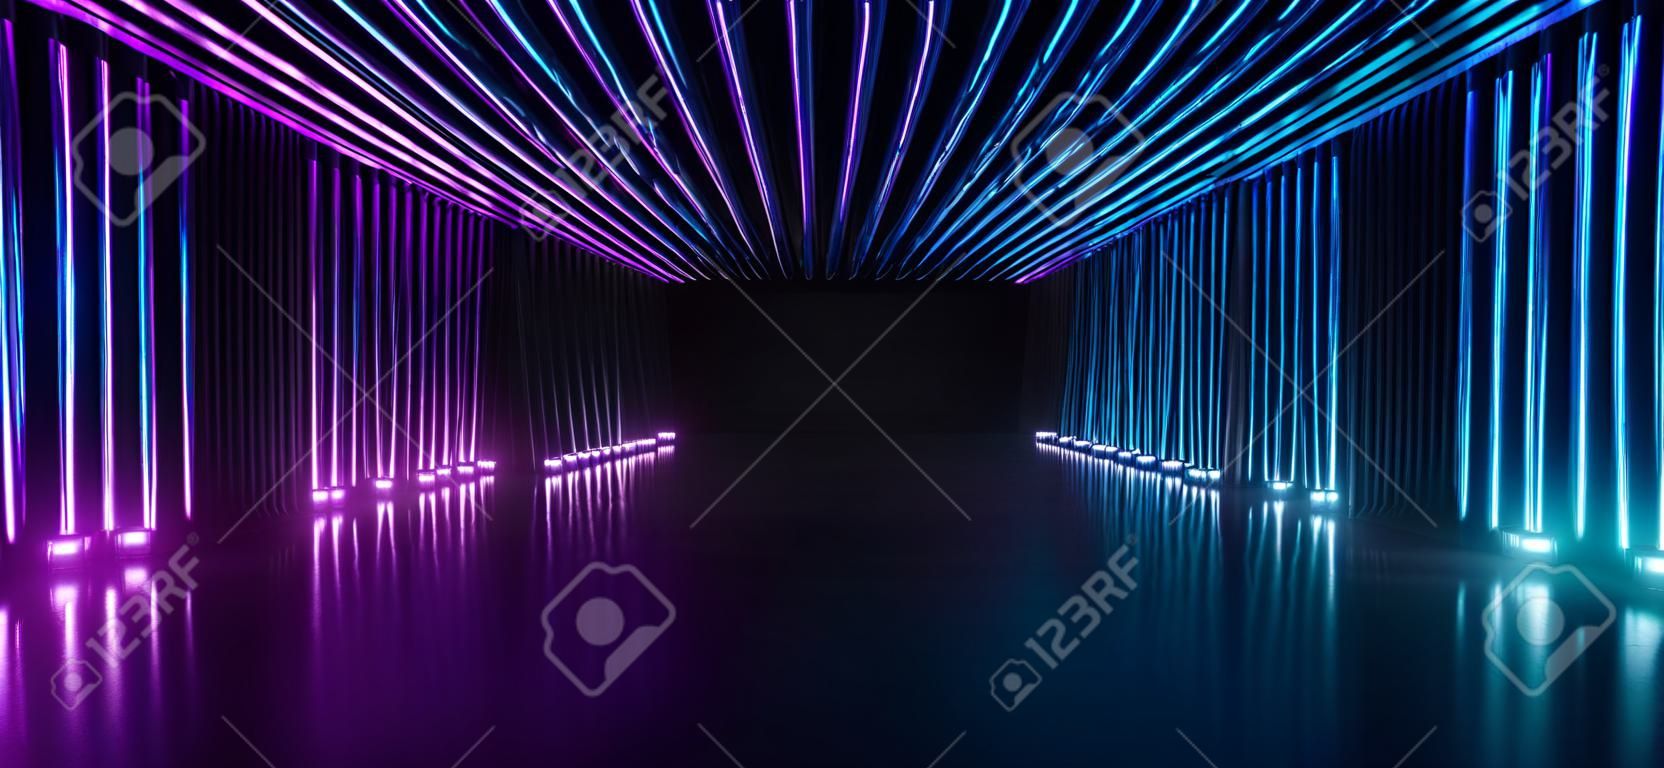 Neonowy laser w kształcie cyber fioletowy niebieski korytarz tunel korytarz studio salon wystawowy parking podziemny garaż odblaskowy beton ilustracja renderowania 3d